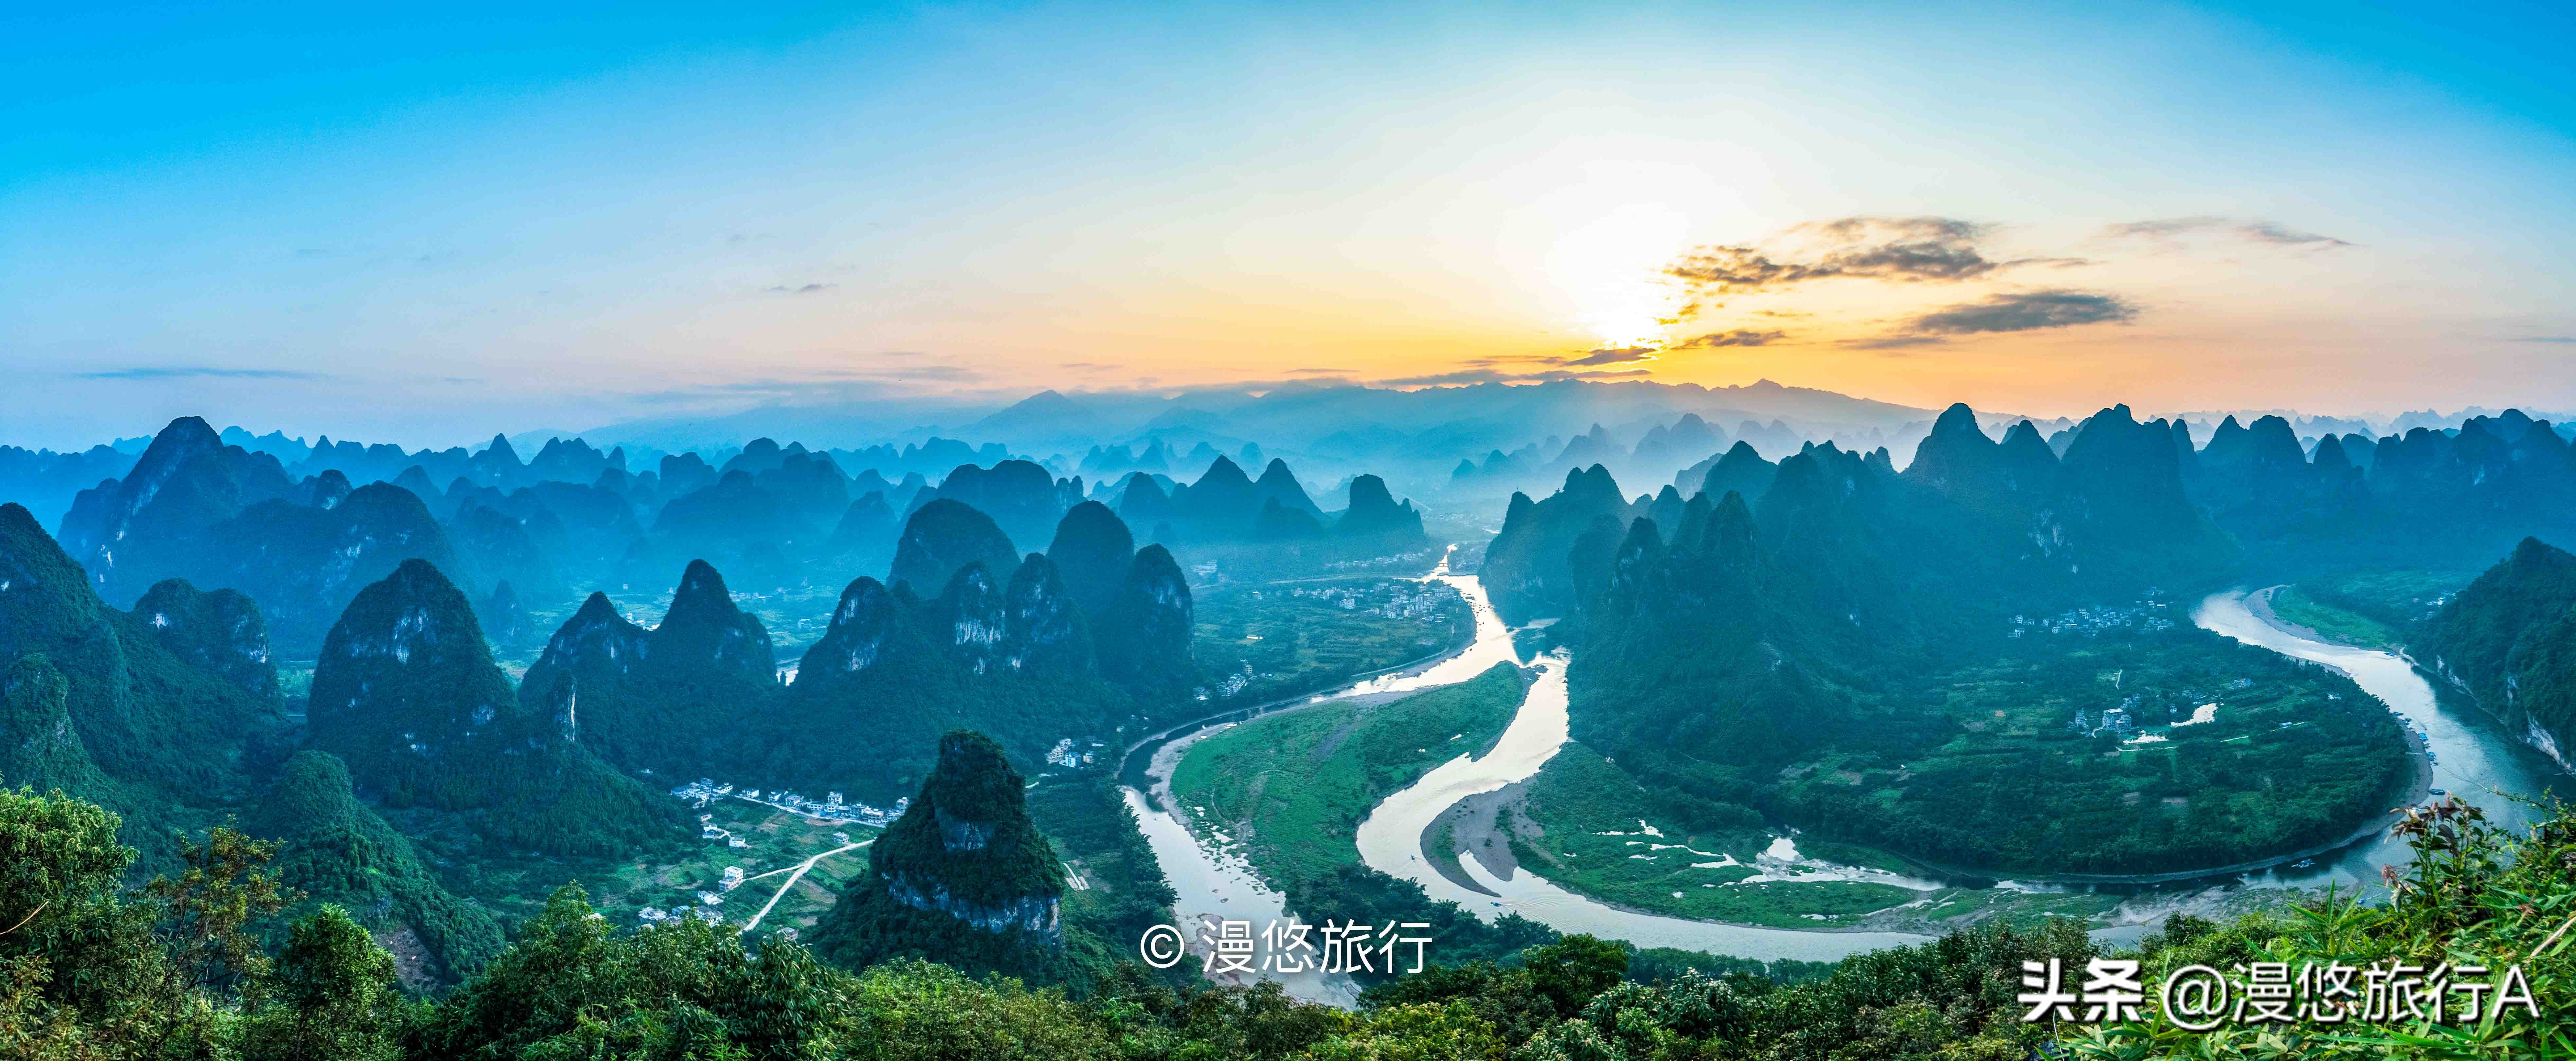 中国最美山水不在桂林市，藏在兴坪镇的山水才是资深旅行者的天堂